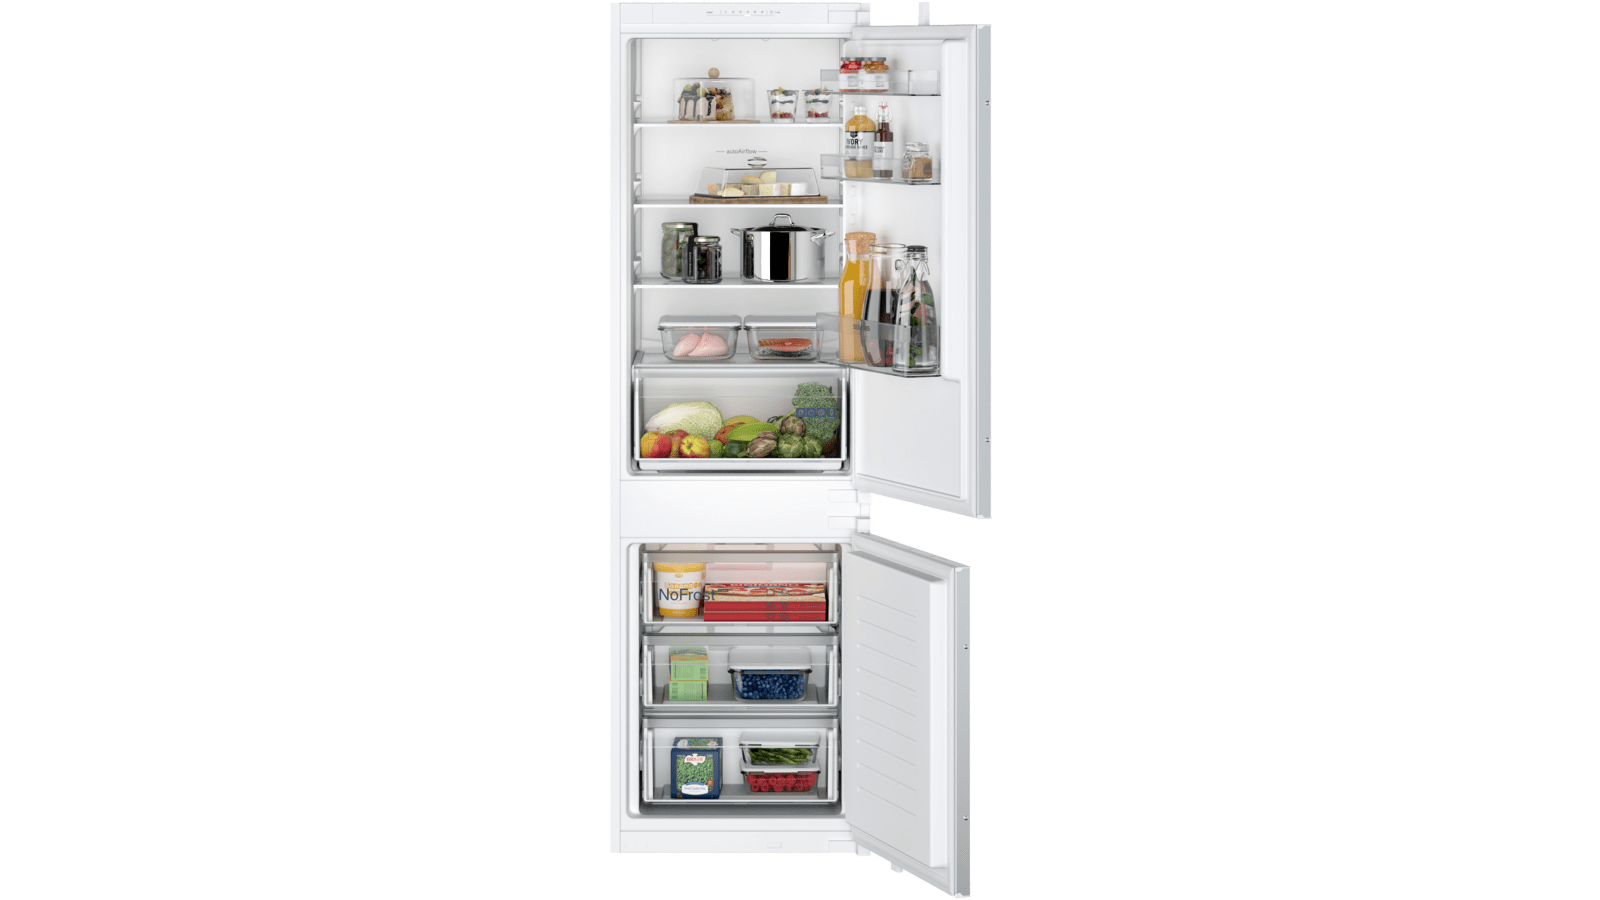 Volet beurrier pour Refrigerateur Siemens, Retrait magasin gratuit